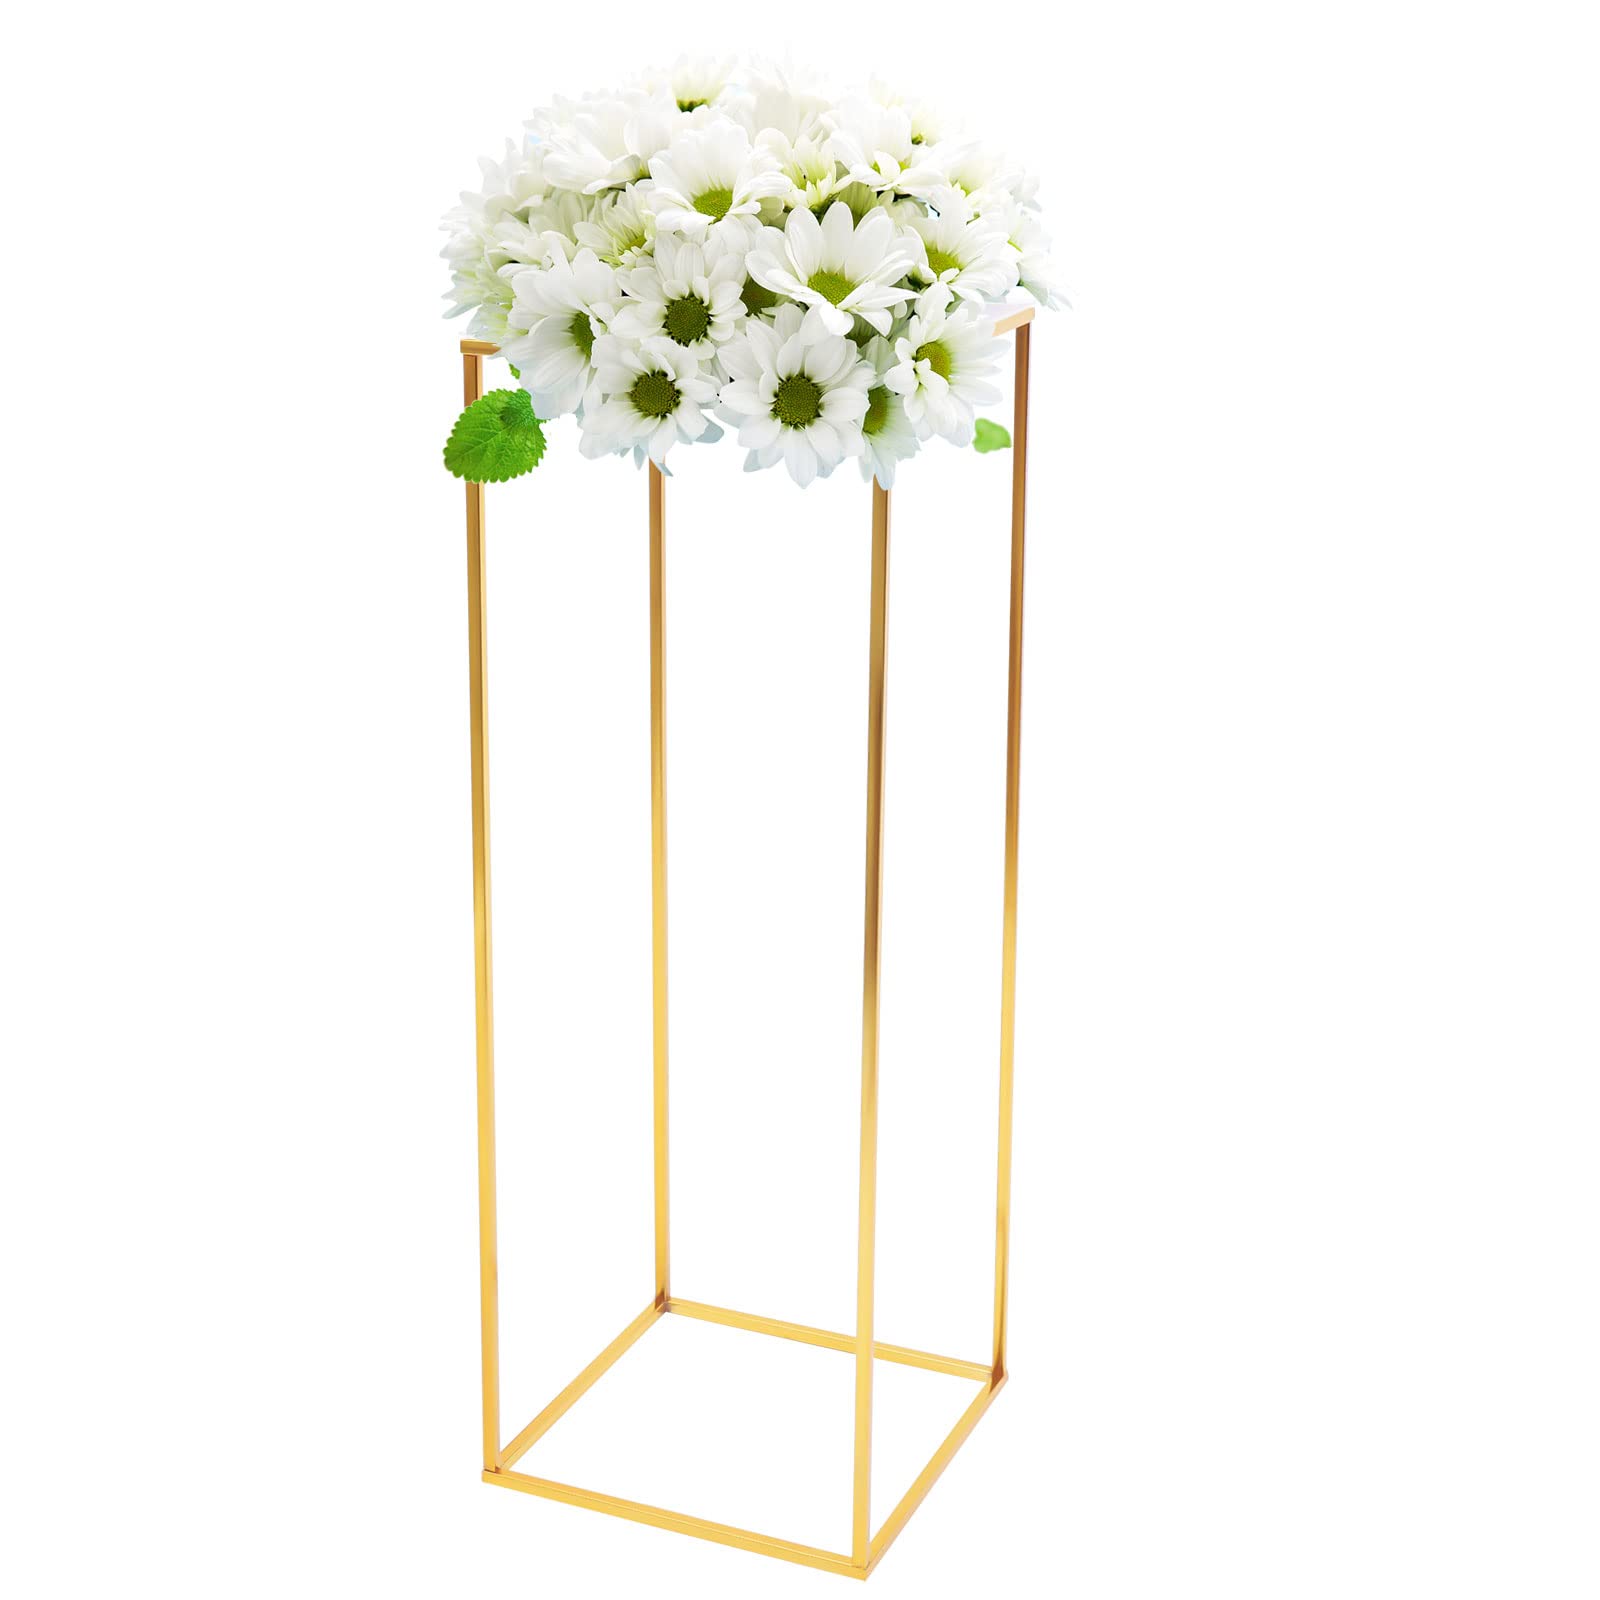 Support à fleurs doré - Colonne en métal acrylique